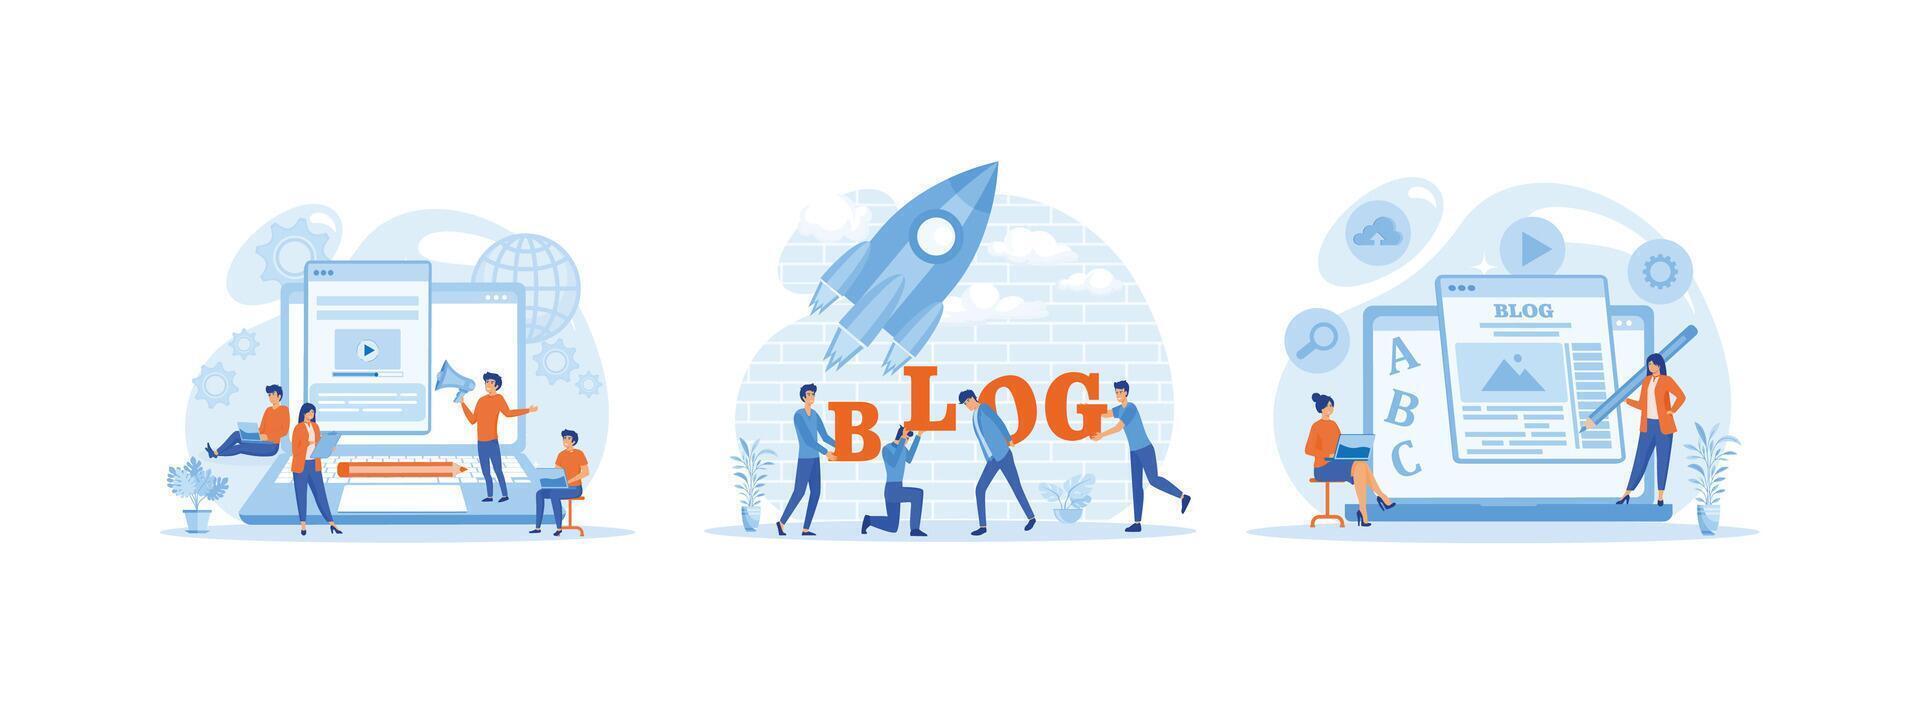 contenido gestión, blogging medios de comunicación desarrollo, en línea promoción y entretenimiento, el concepto de creando Blog artículos con humano caracteres. Blog creación conjunto plano vector moderno ilustración